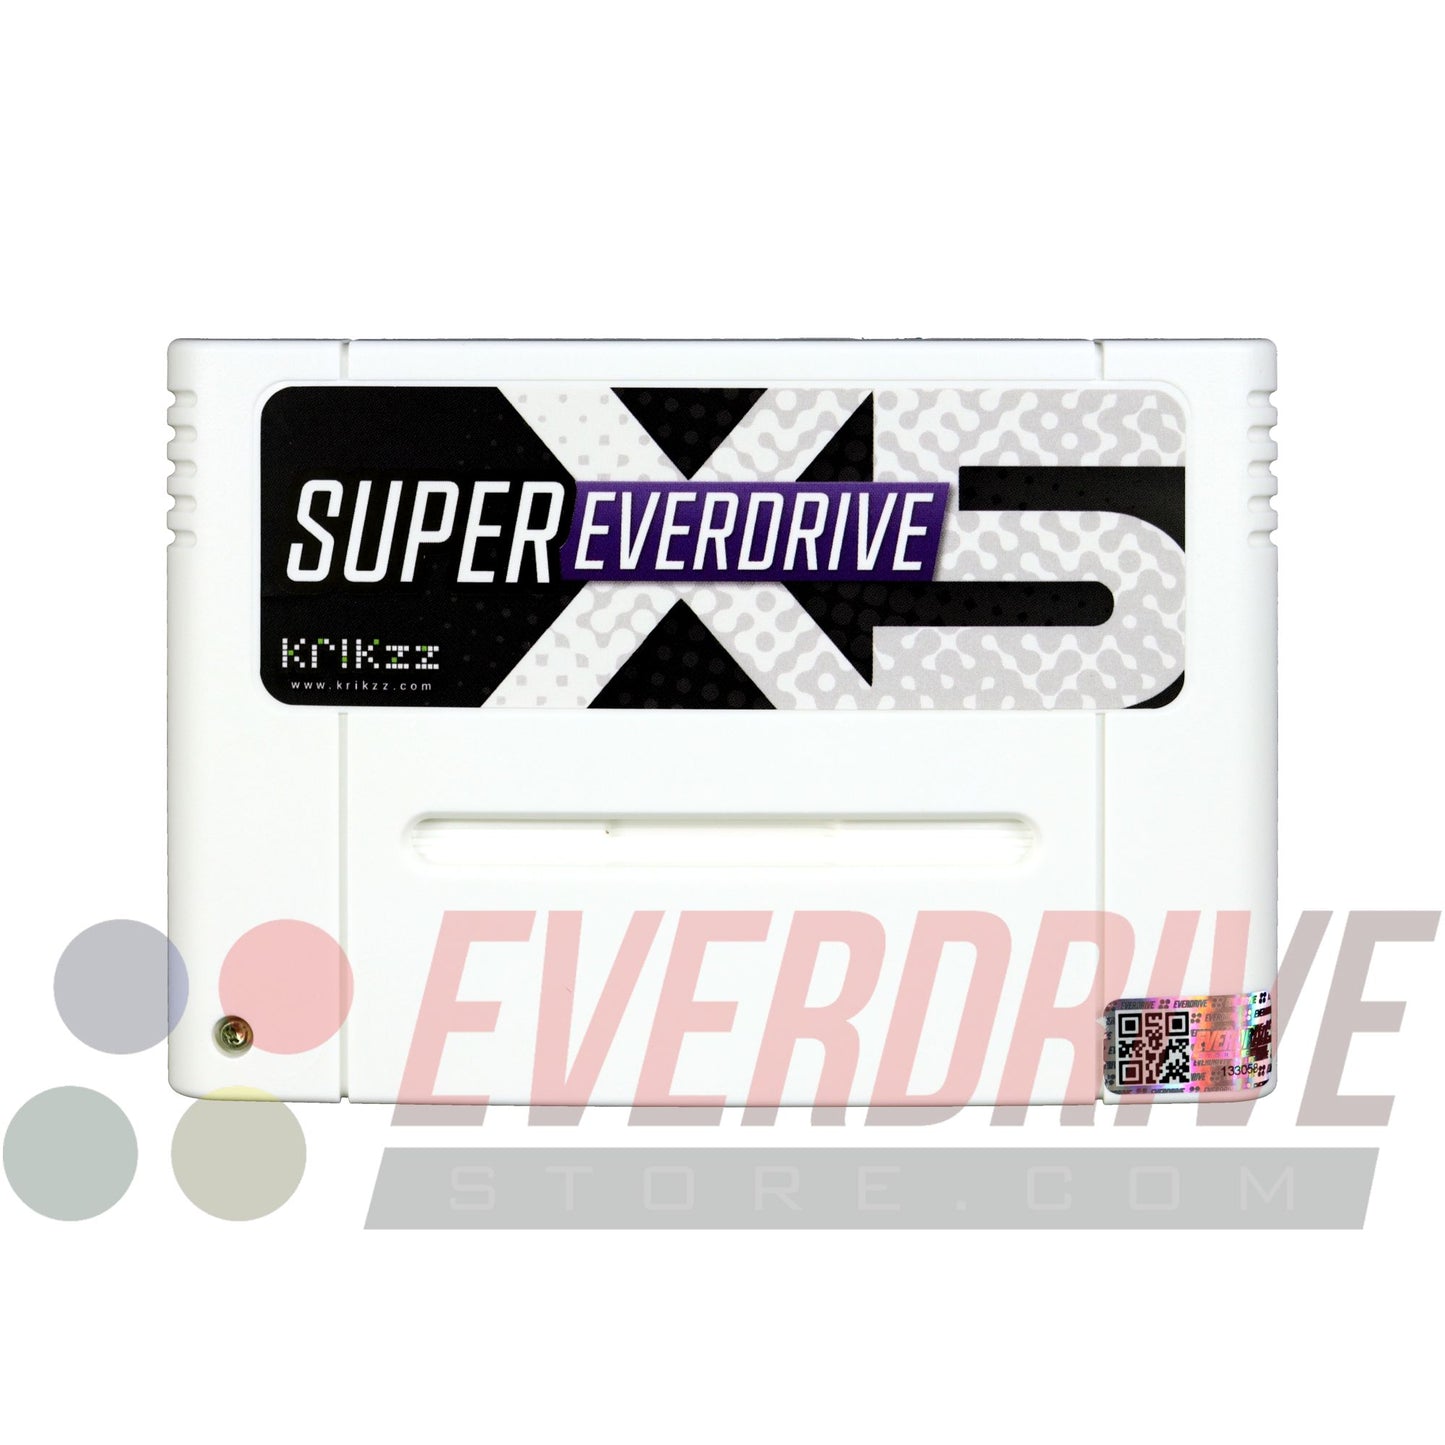 Super Everdrive X5 - White